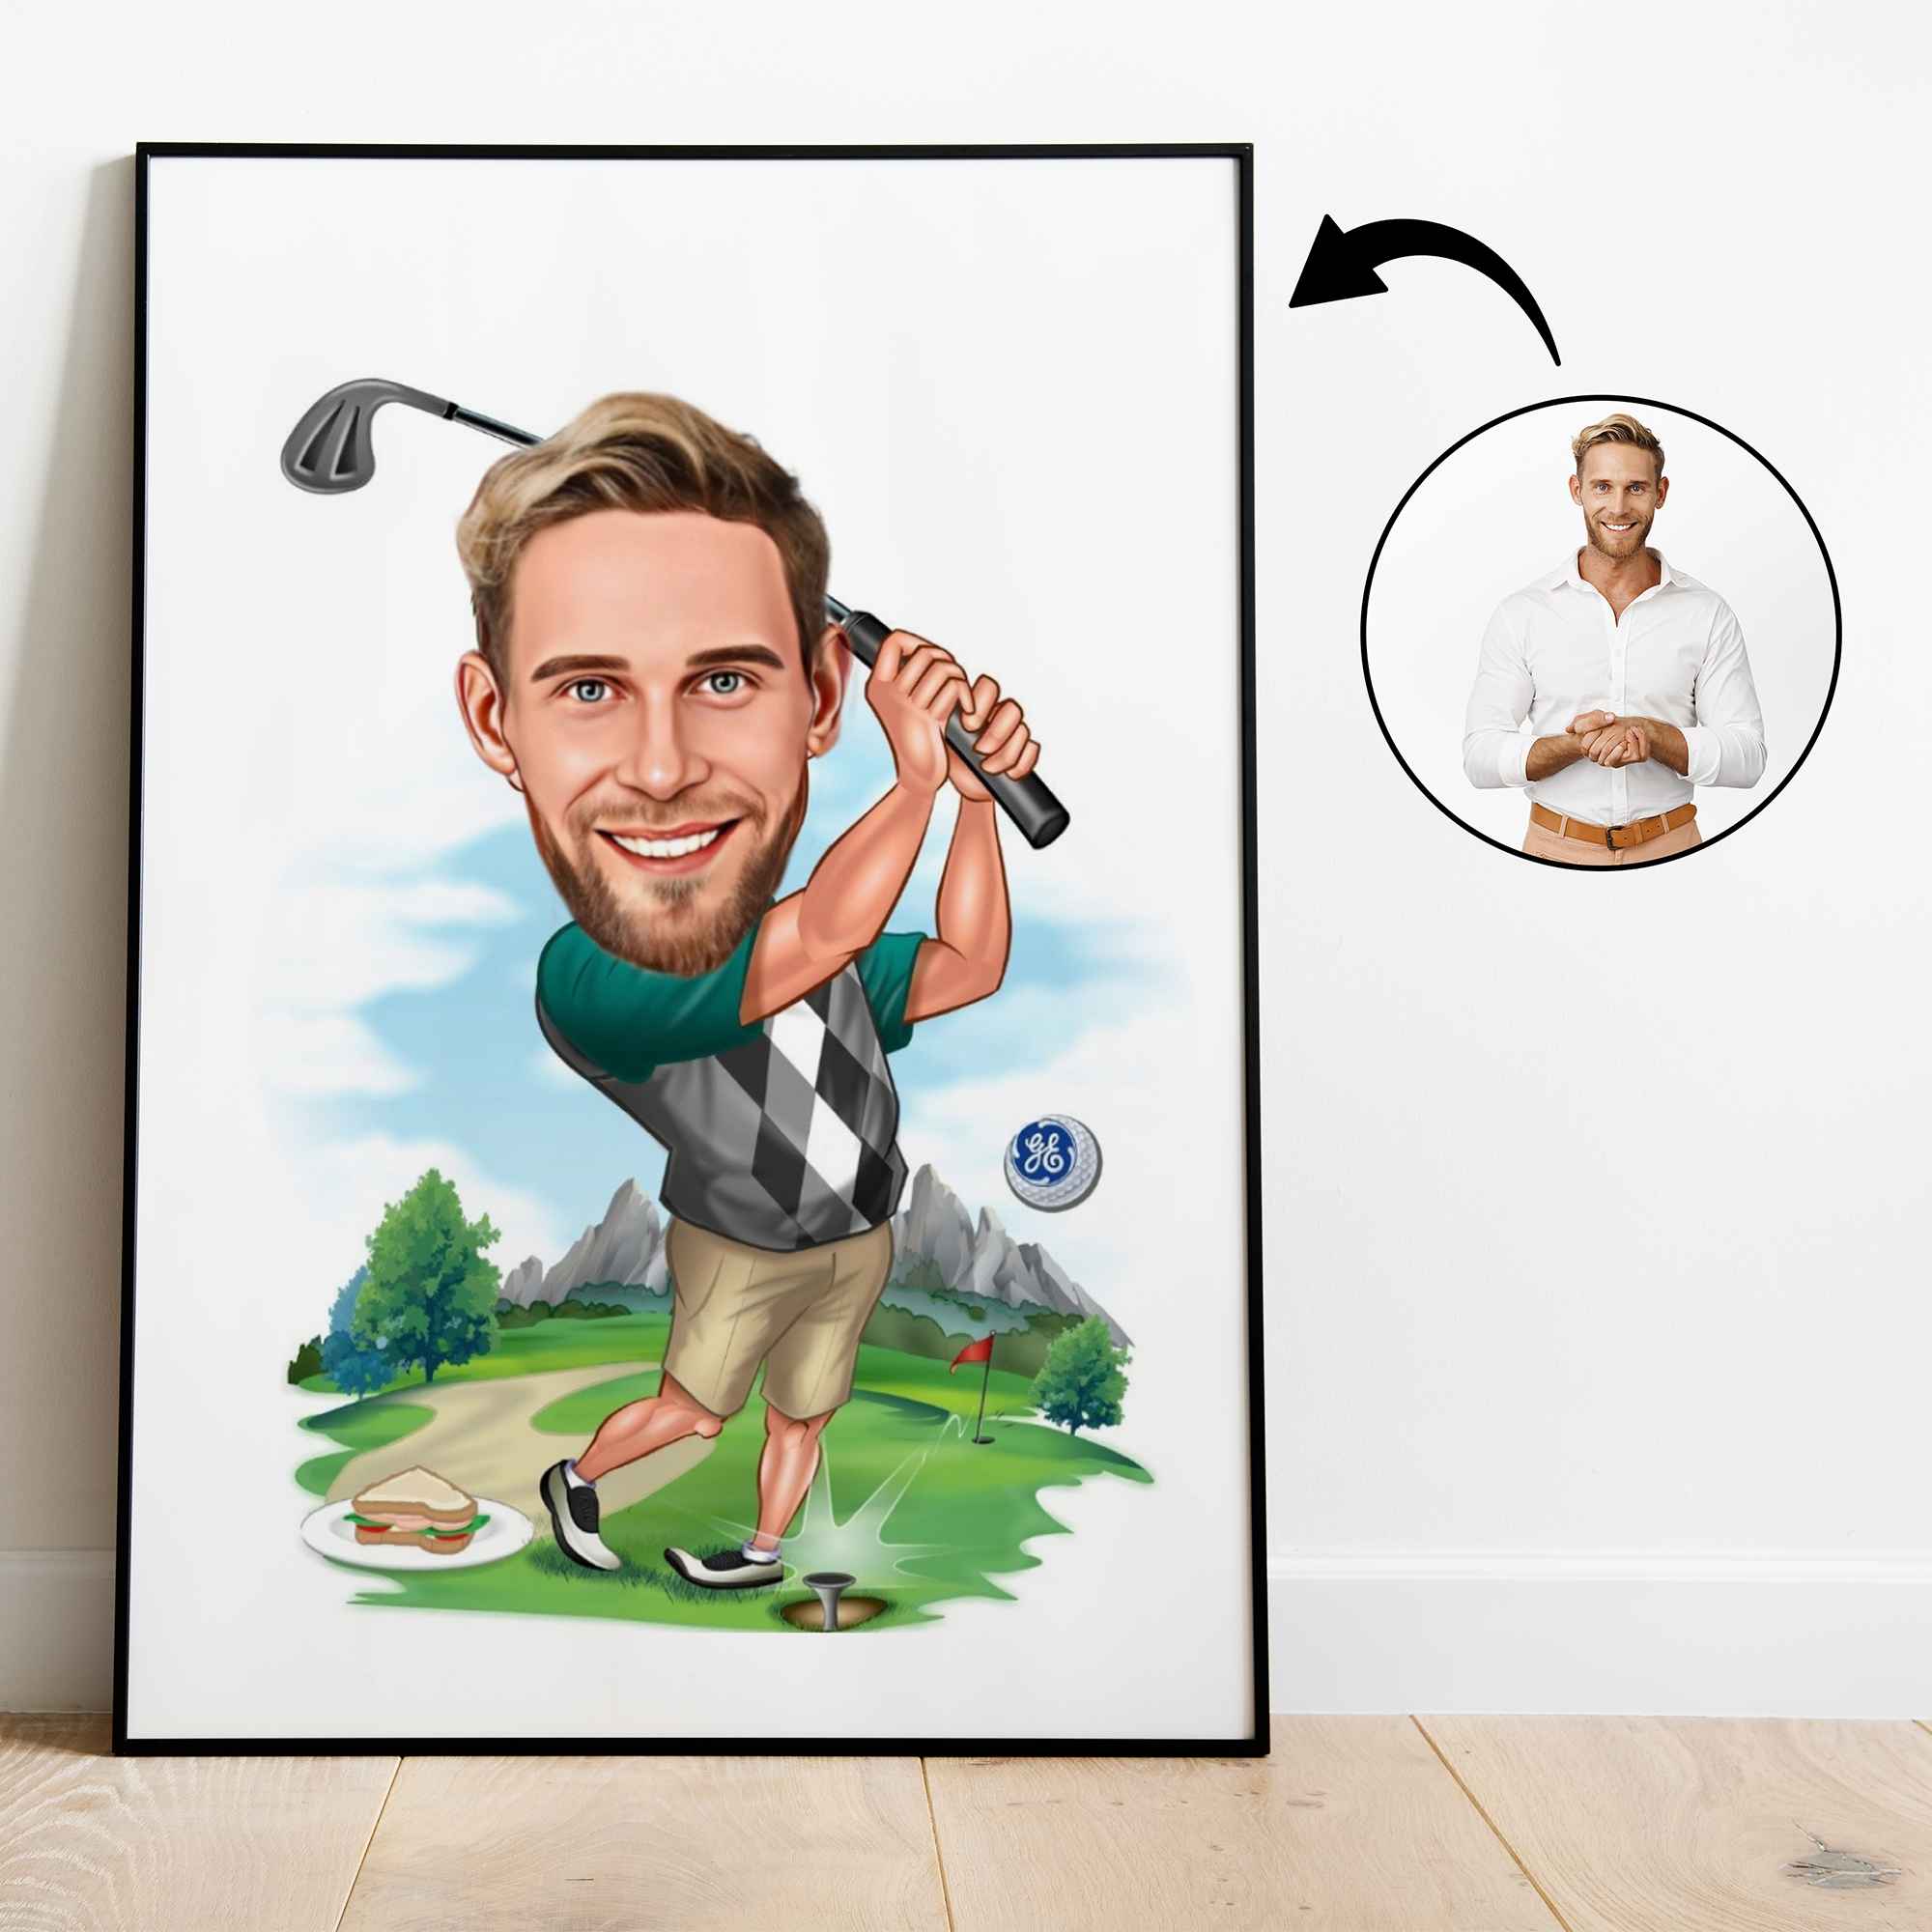 Golf tema15 (1 person) - karikaturtegning efter dine fotos